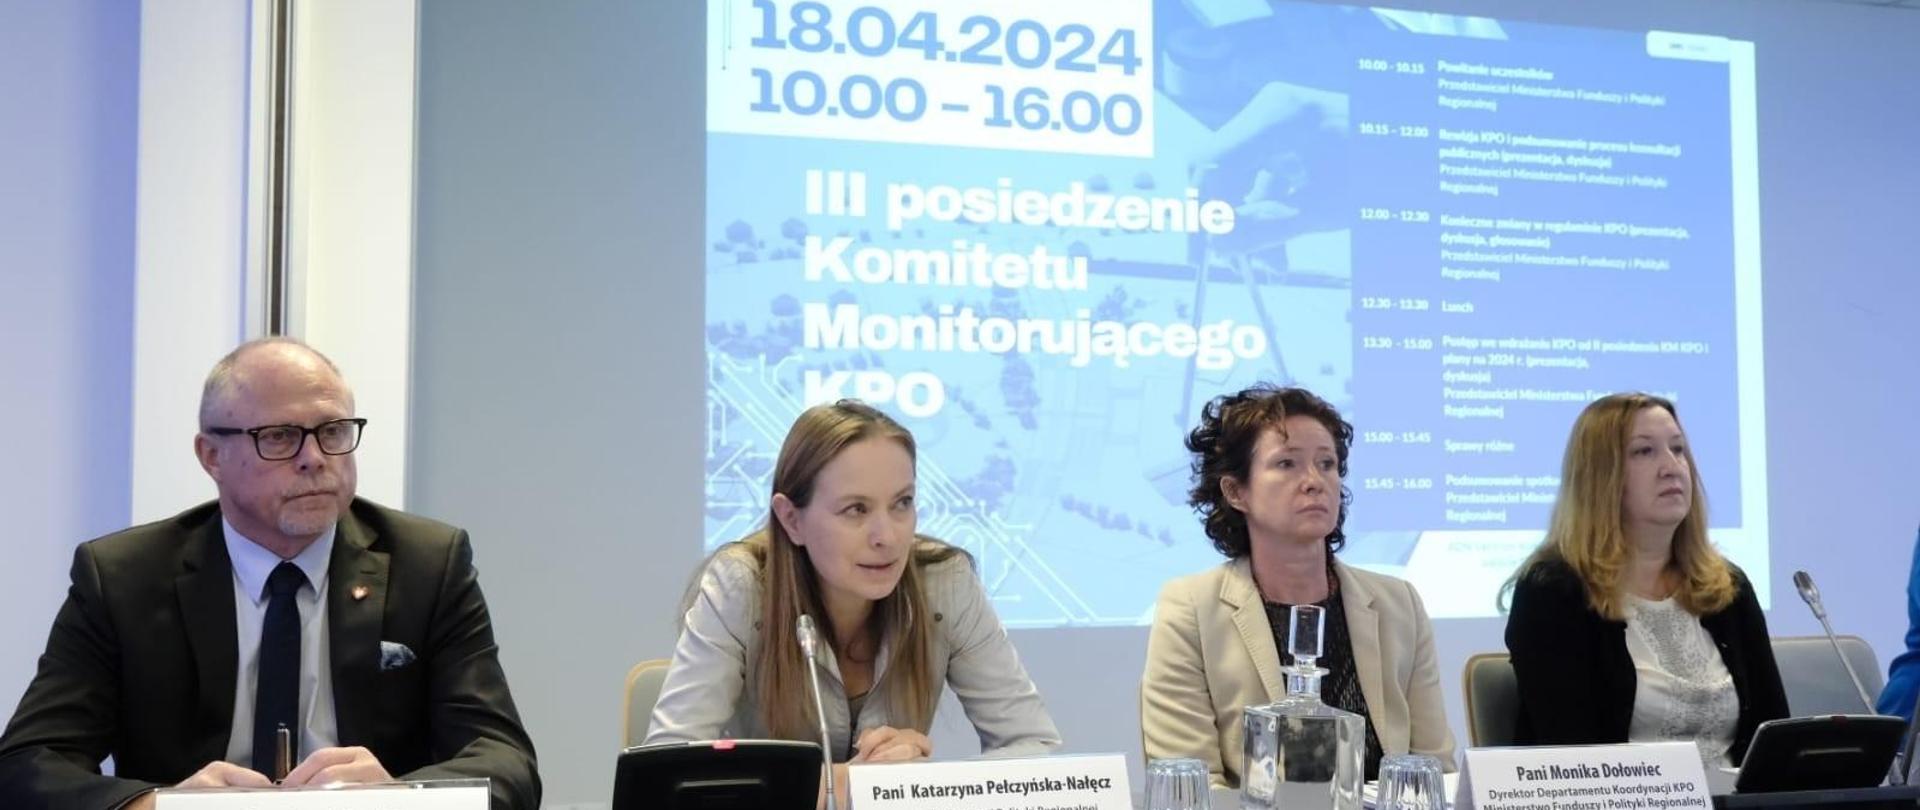 Cztery osoby siedzą obok siebie. Druga od lewej siedzi minister Katarzyna Pełczyńska-Nałęcz i patrzy przed siebie. Obok niej, pierwszy od lewej siedzi wiceminister Jacek Protas.